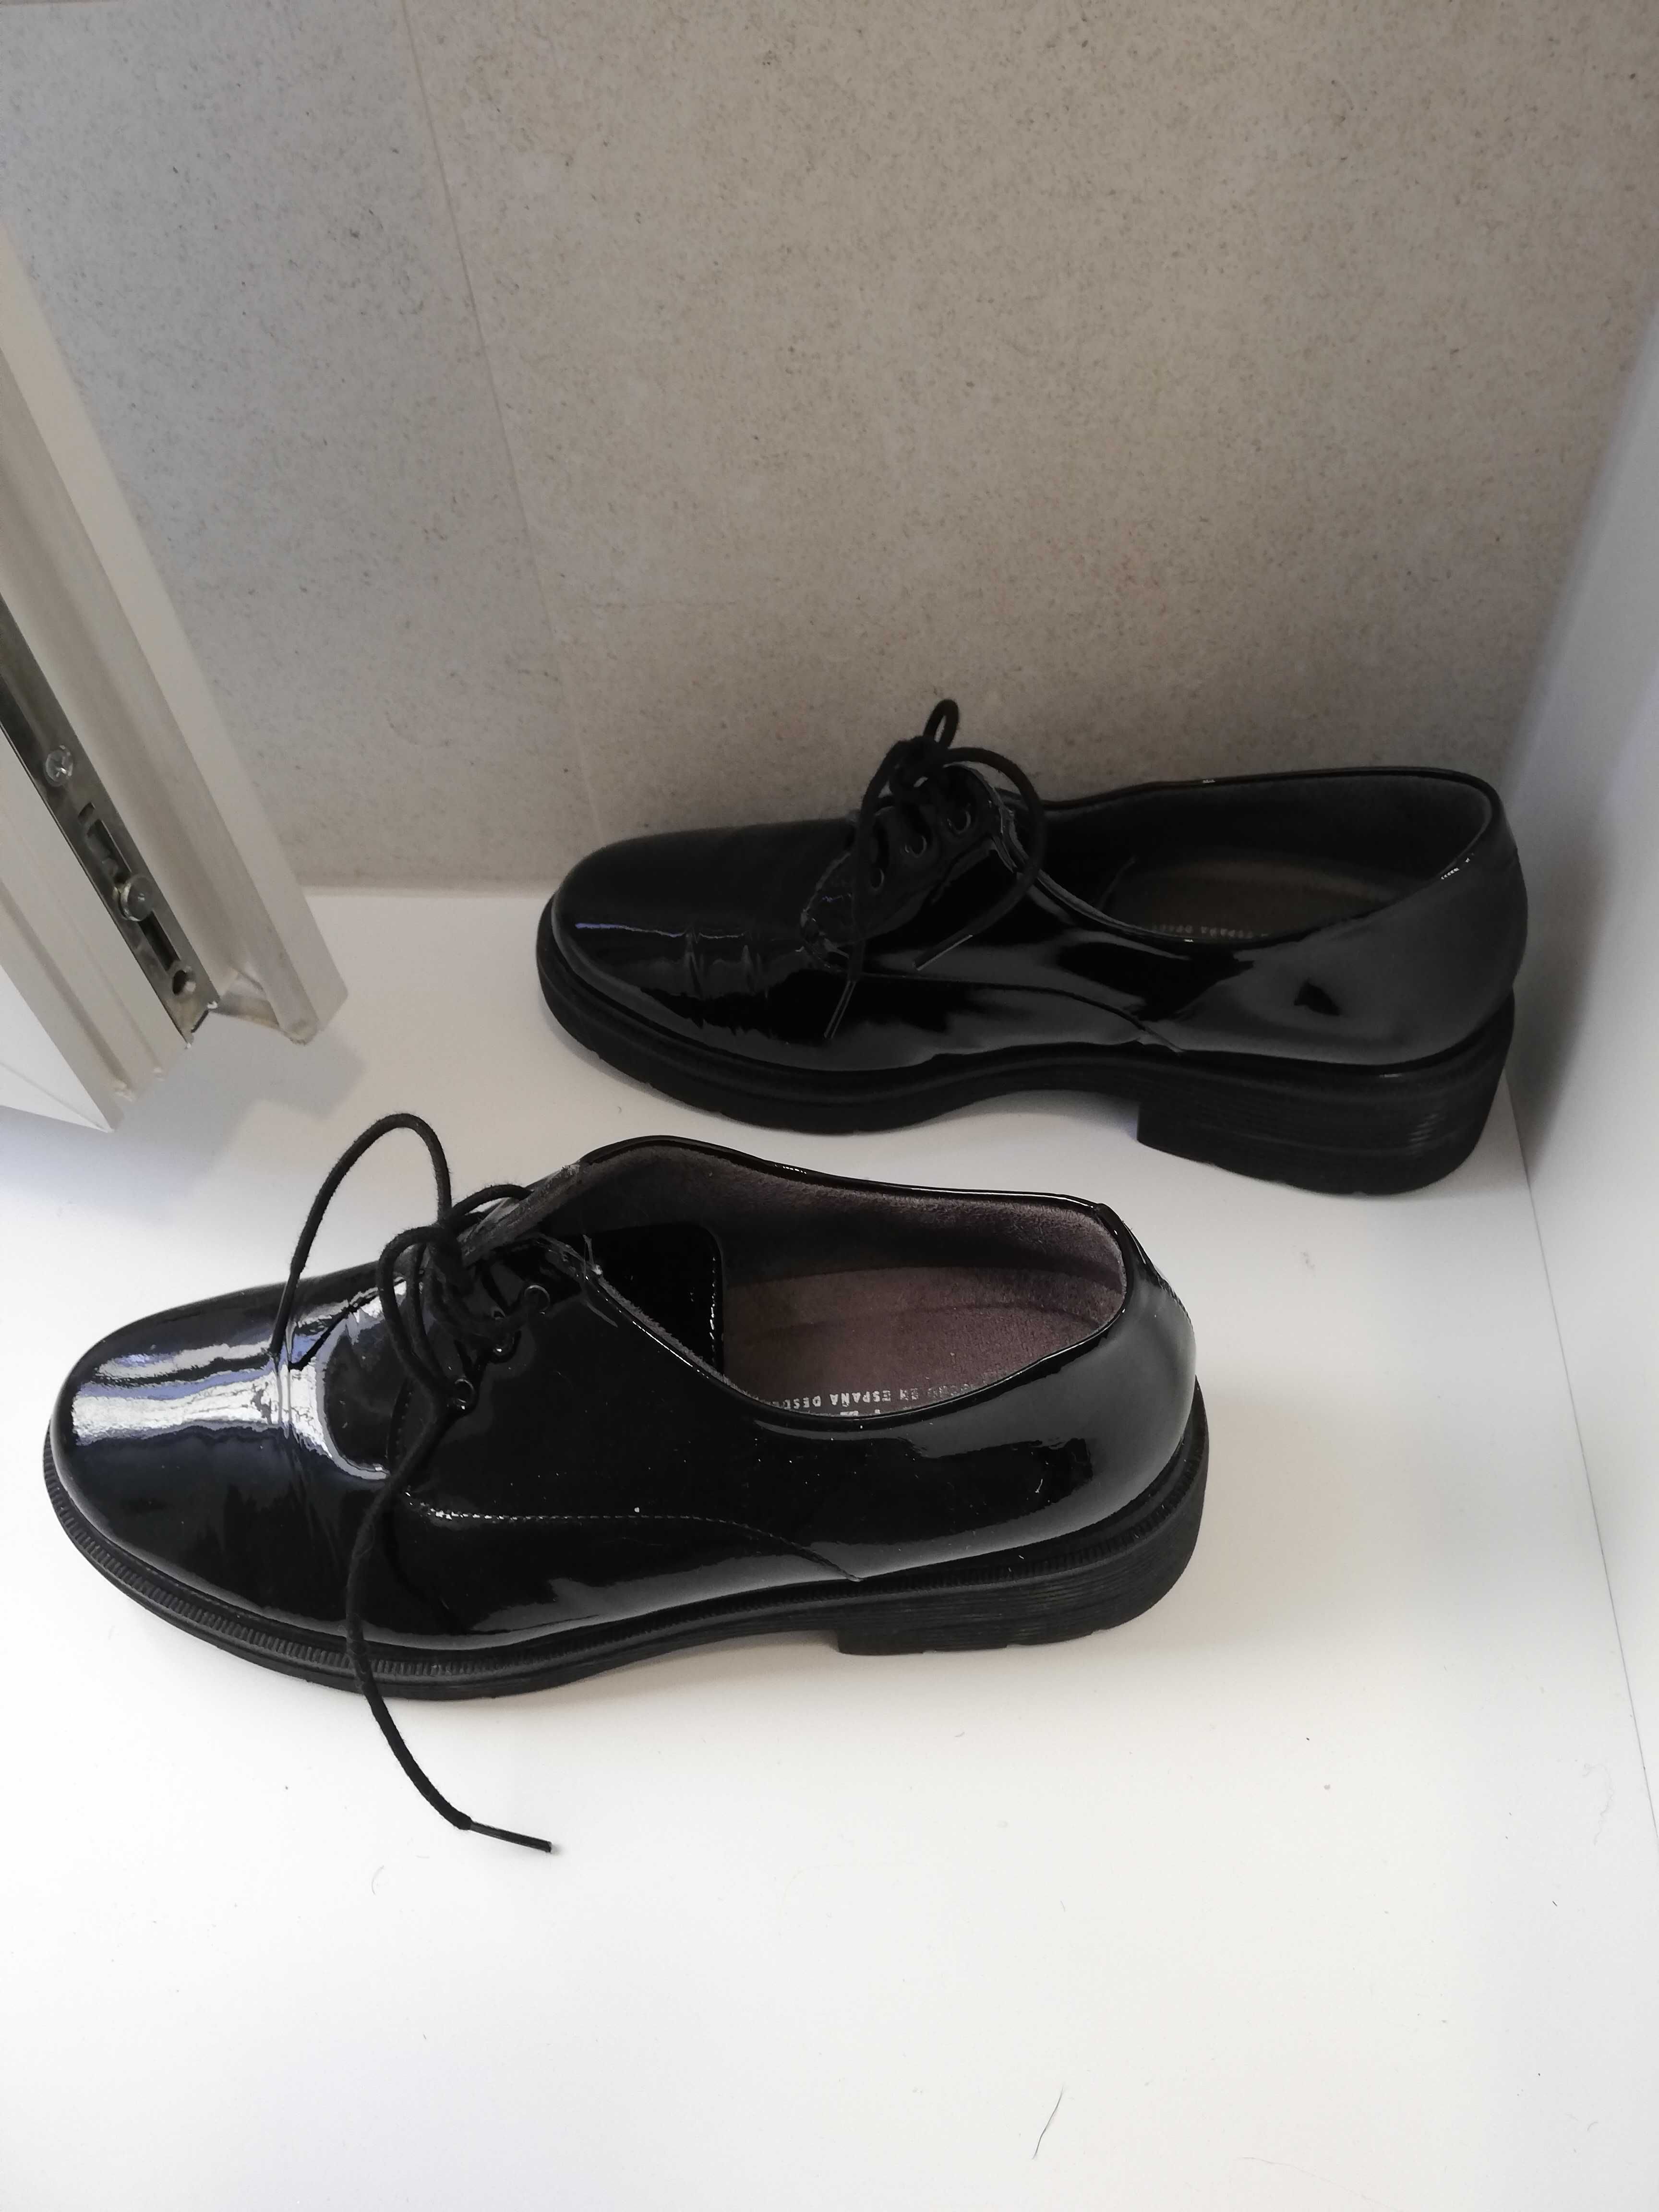 Sapatos pretos, 39, pele. Muito pouco uso.